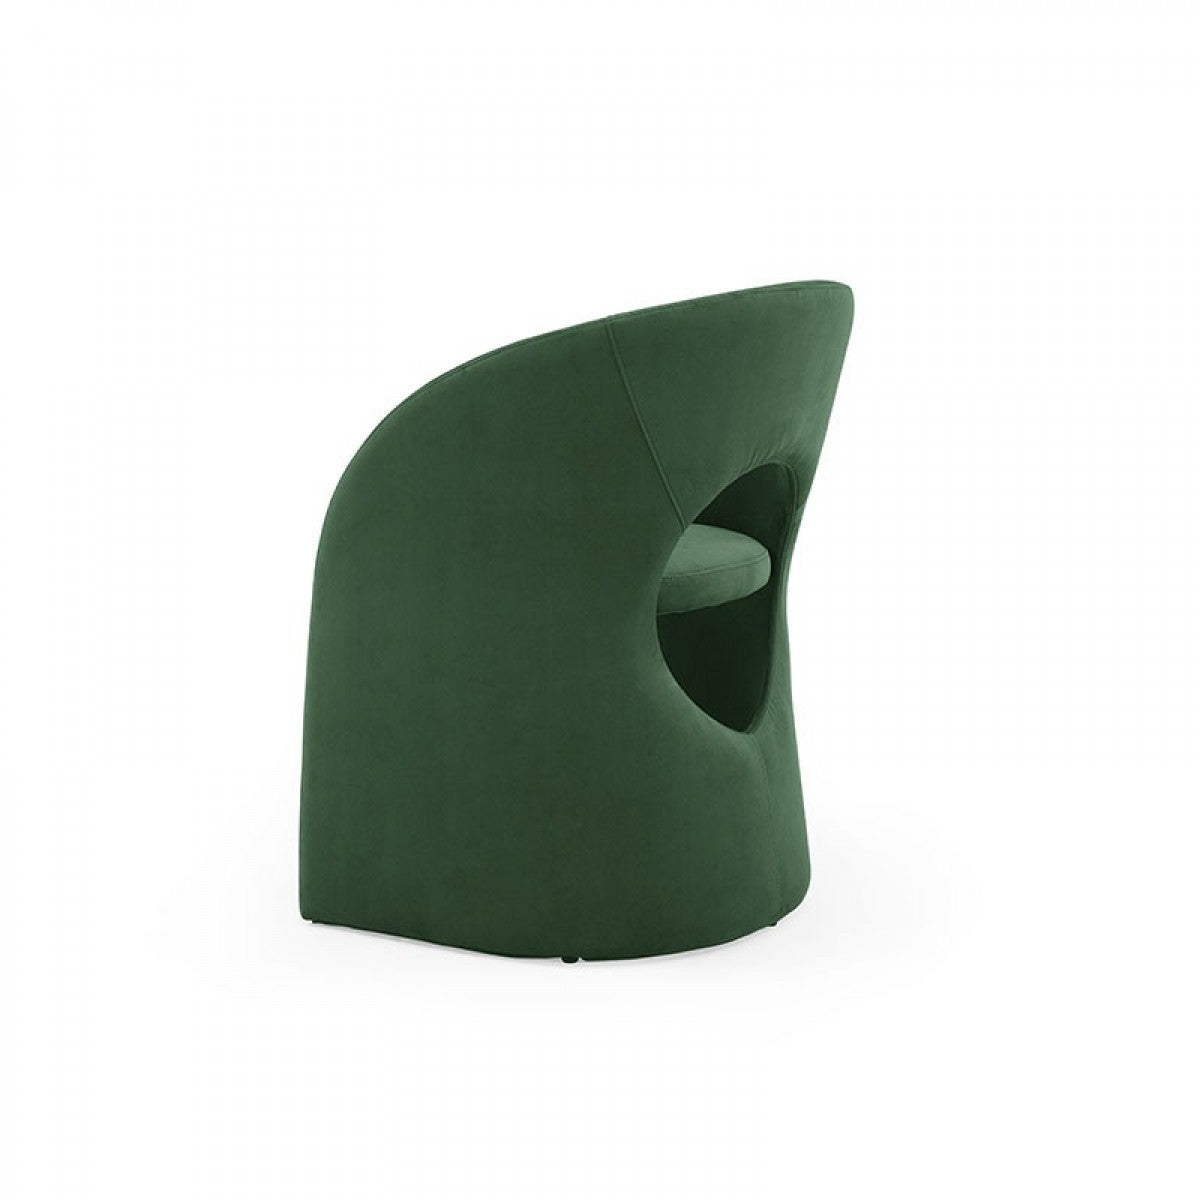 Modrest Brea - Modern Dining Green Chair